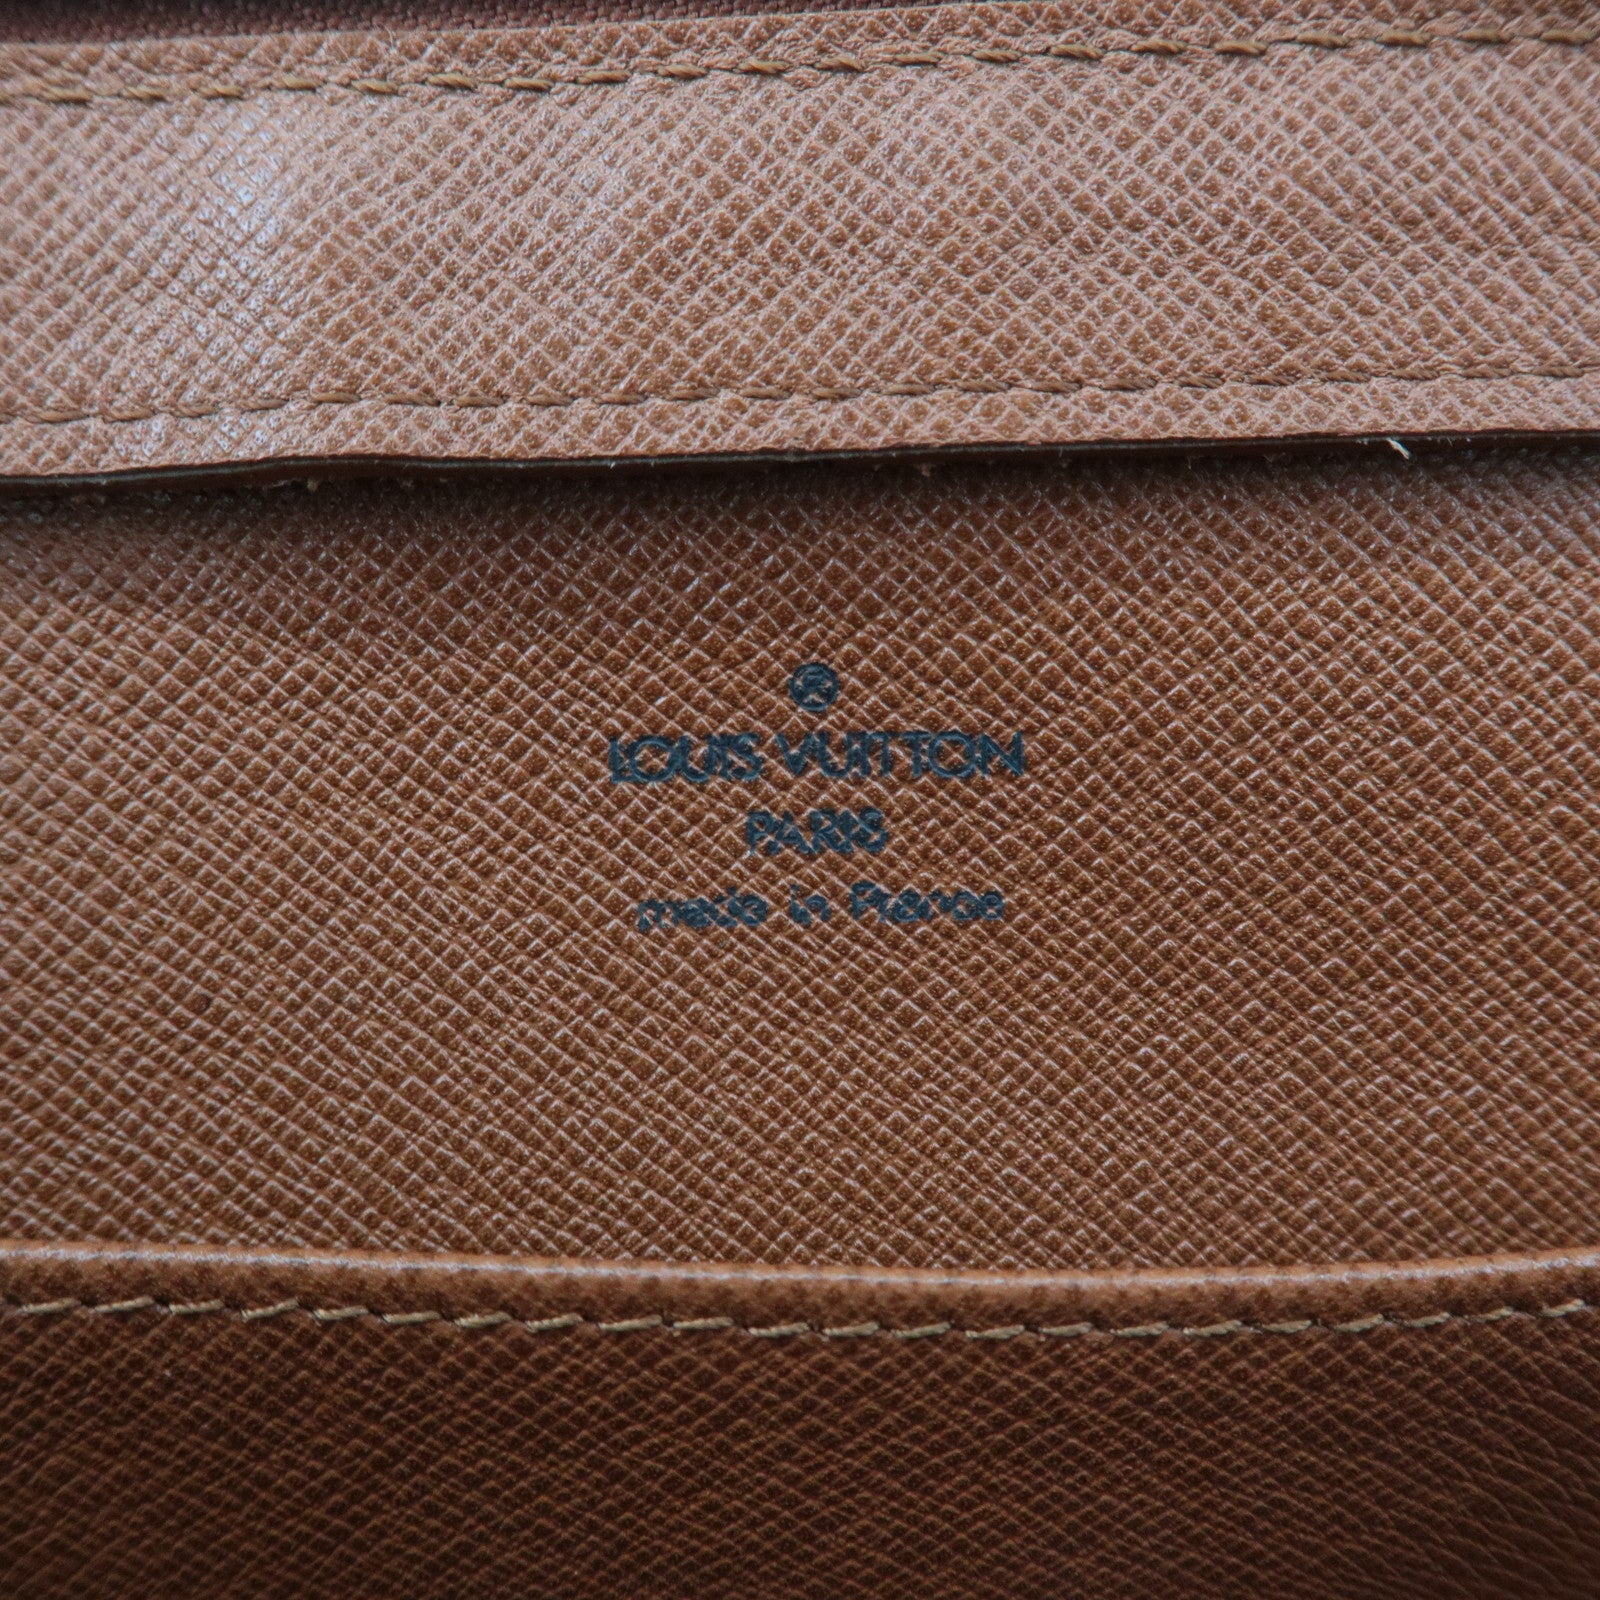 Louis-Vuitton-Set-of-3-Monogram-Clutch-Bag-M51795-M47542-M51790